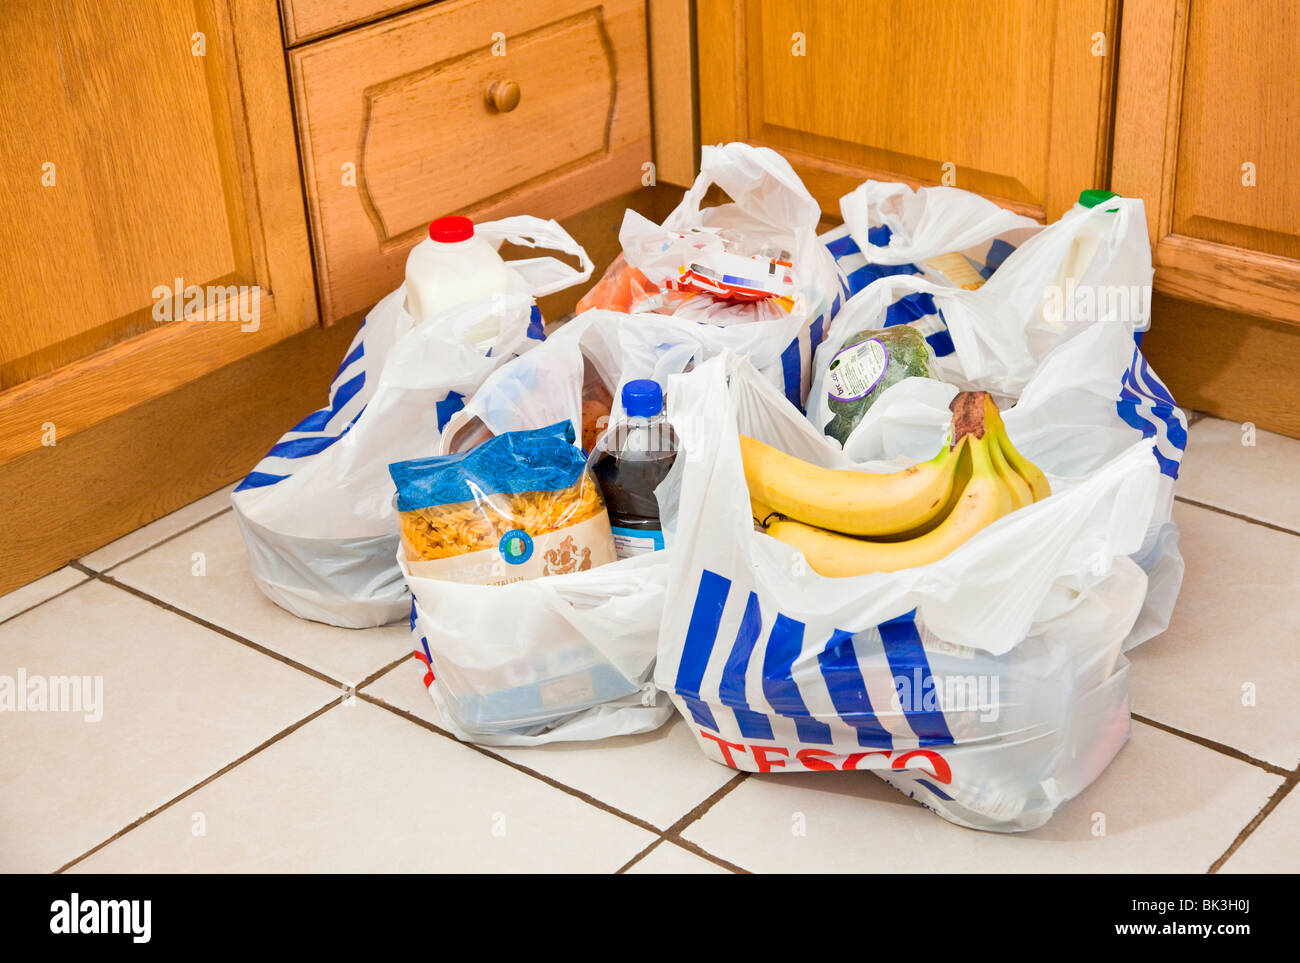 Tesco bolsas llenas de compras en un piso de la cocina UK Foto de stock